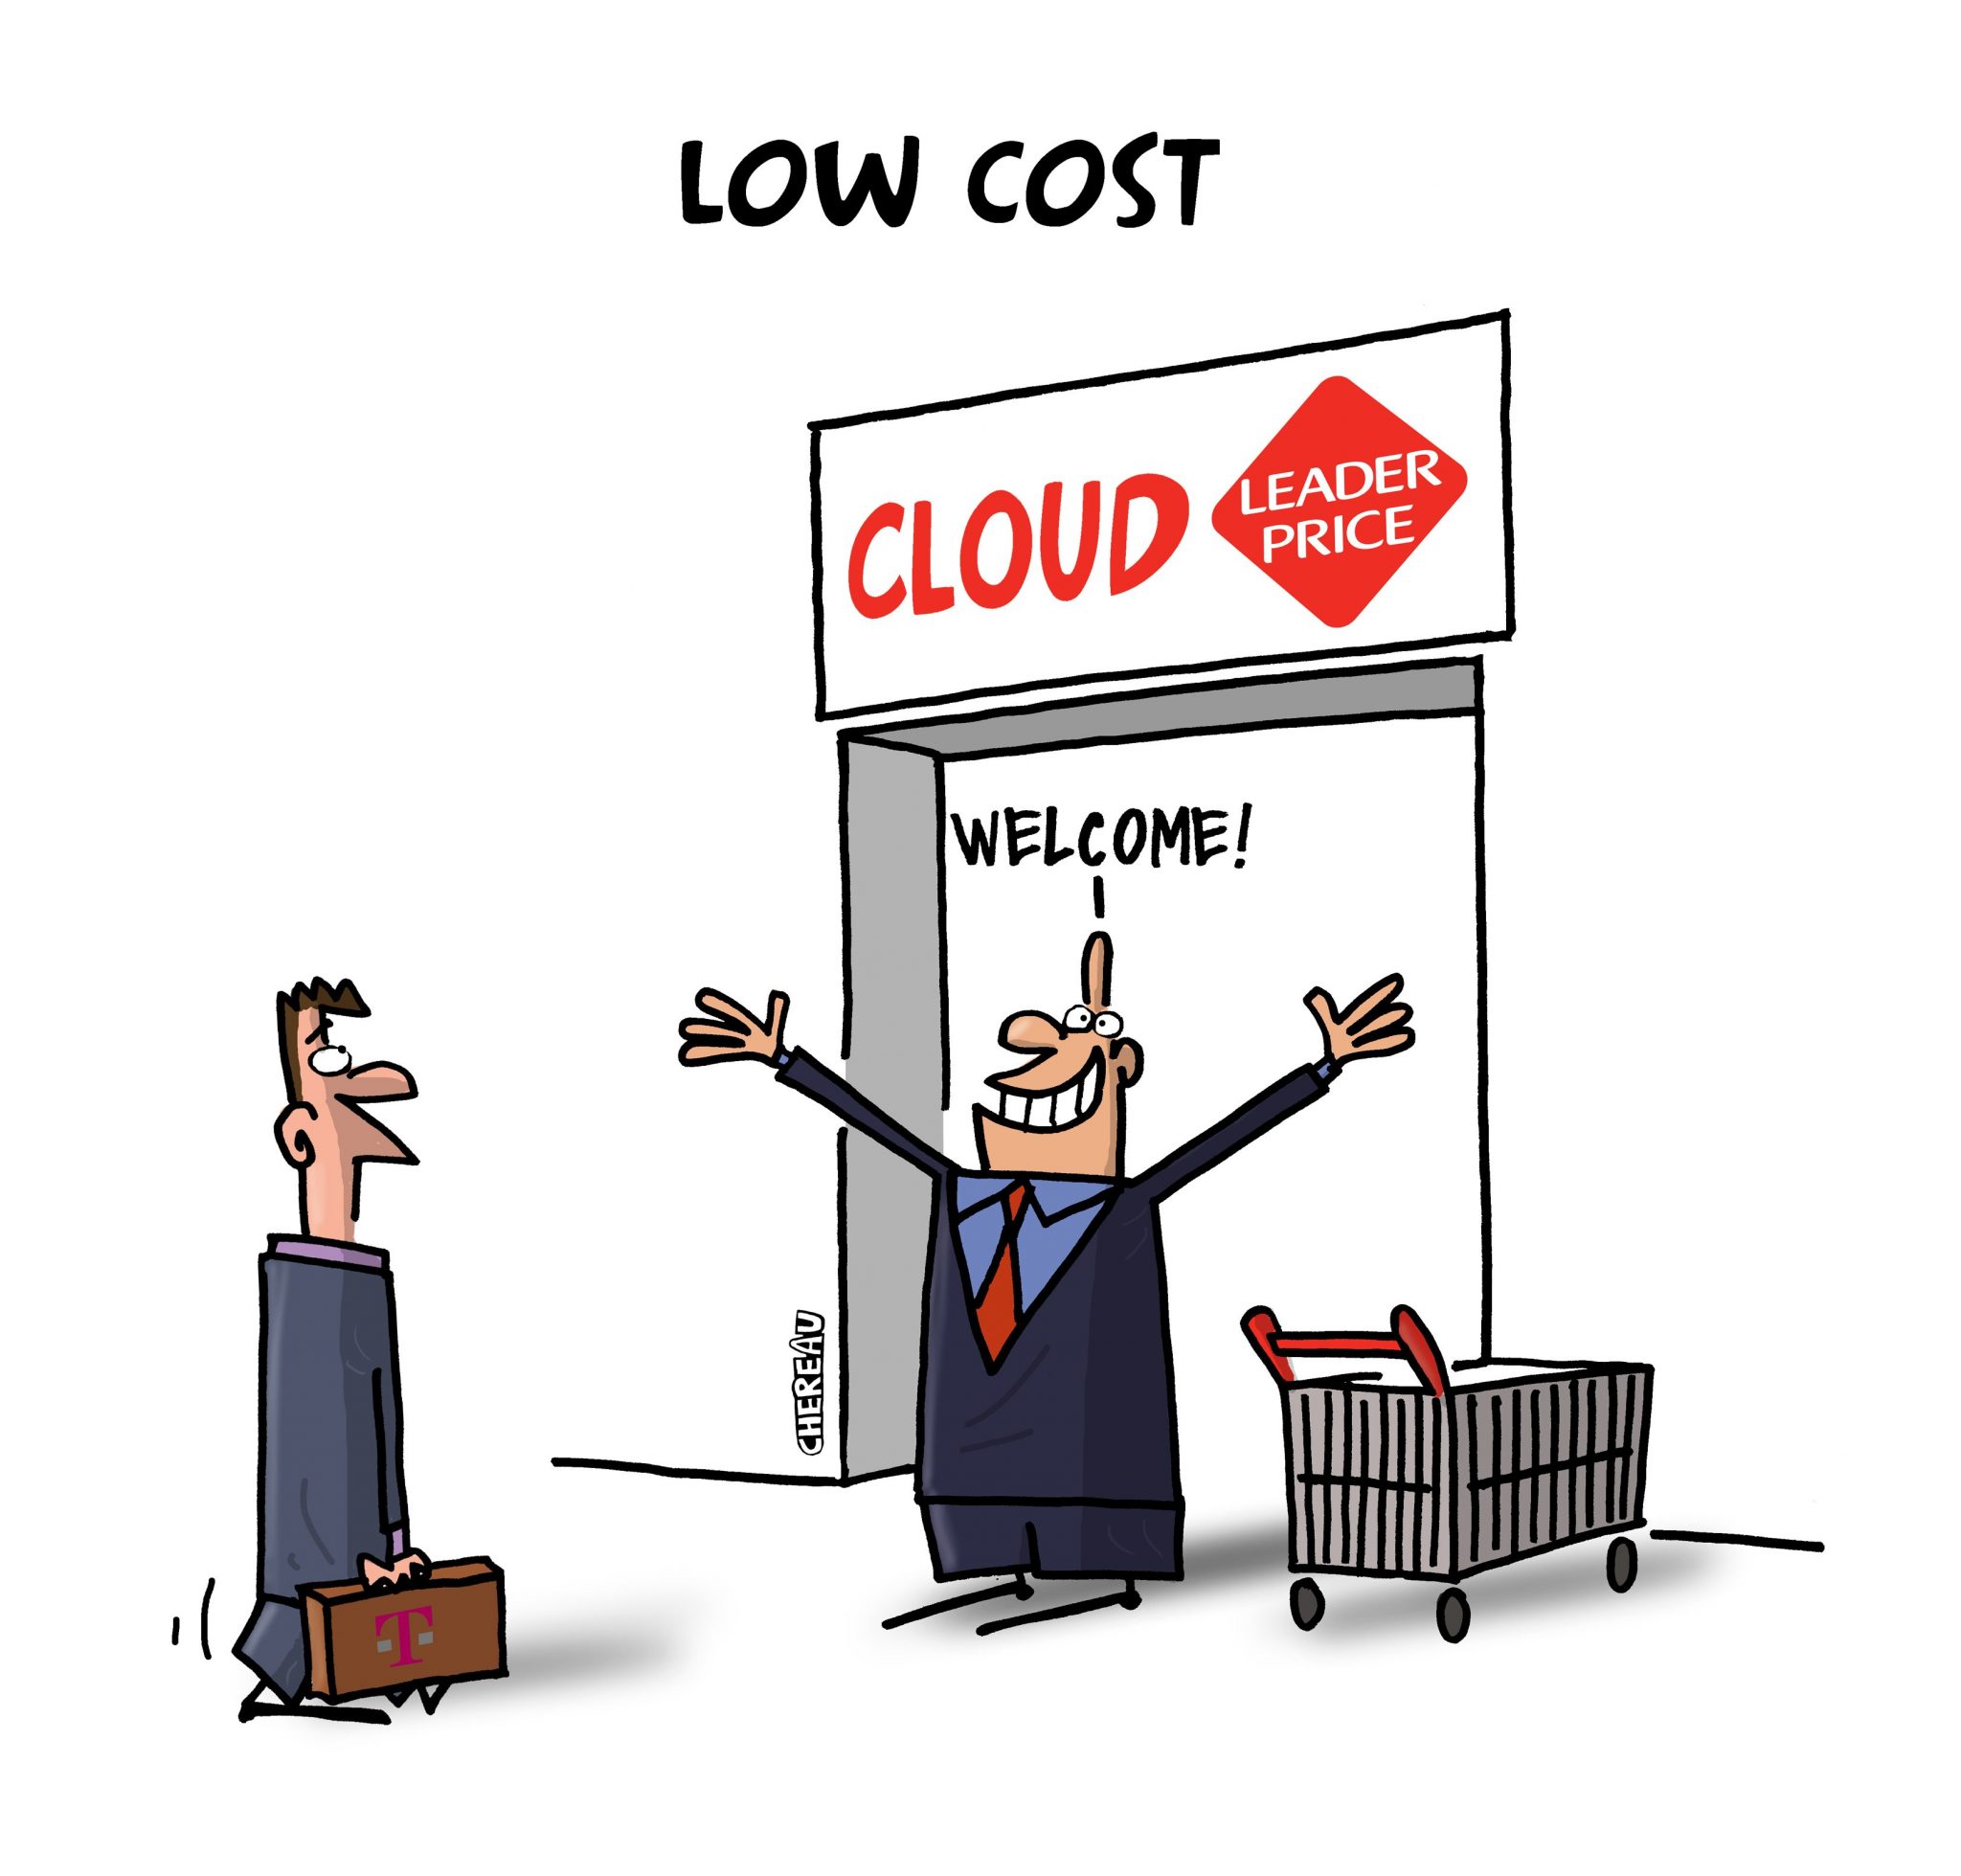 Le Cloud low cost